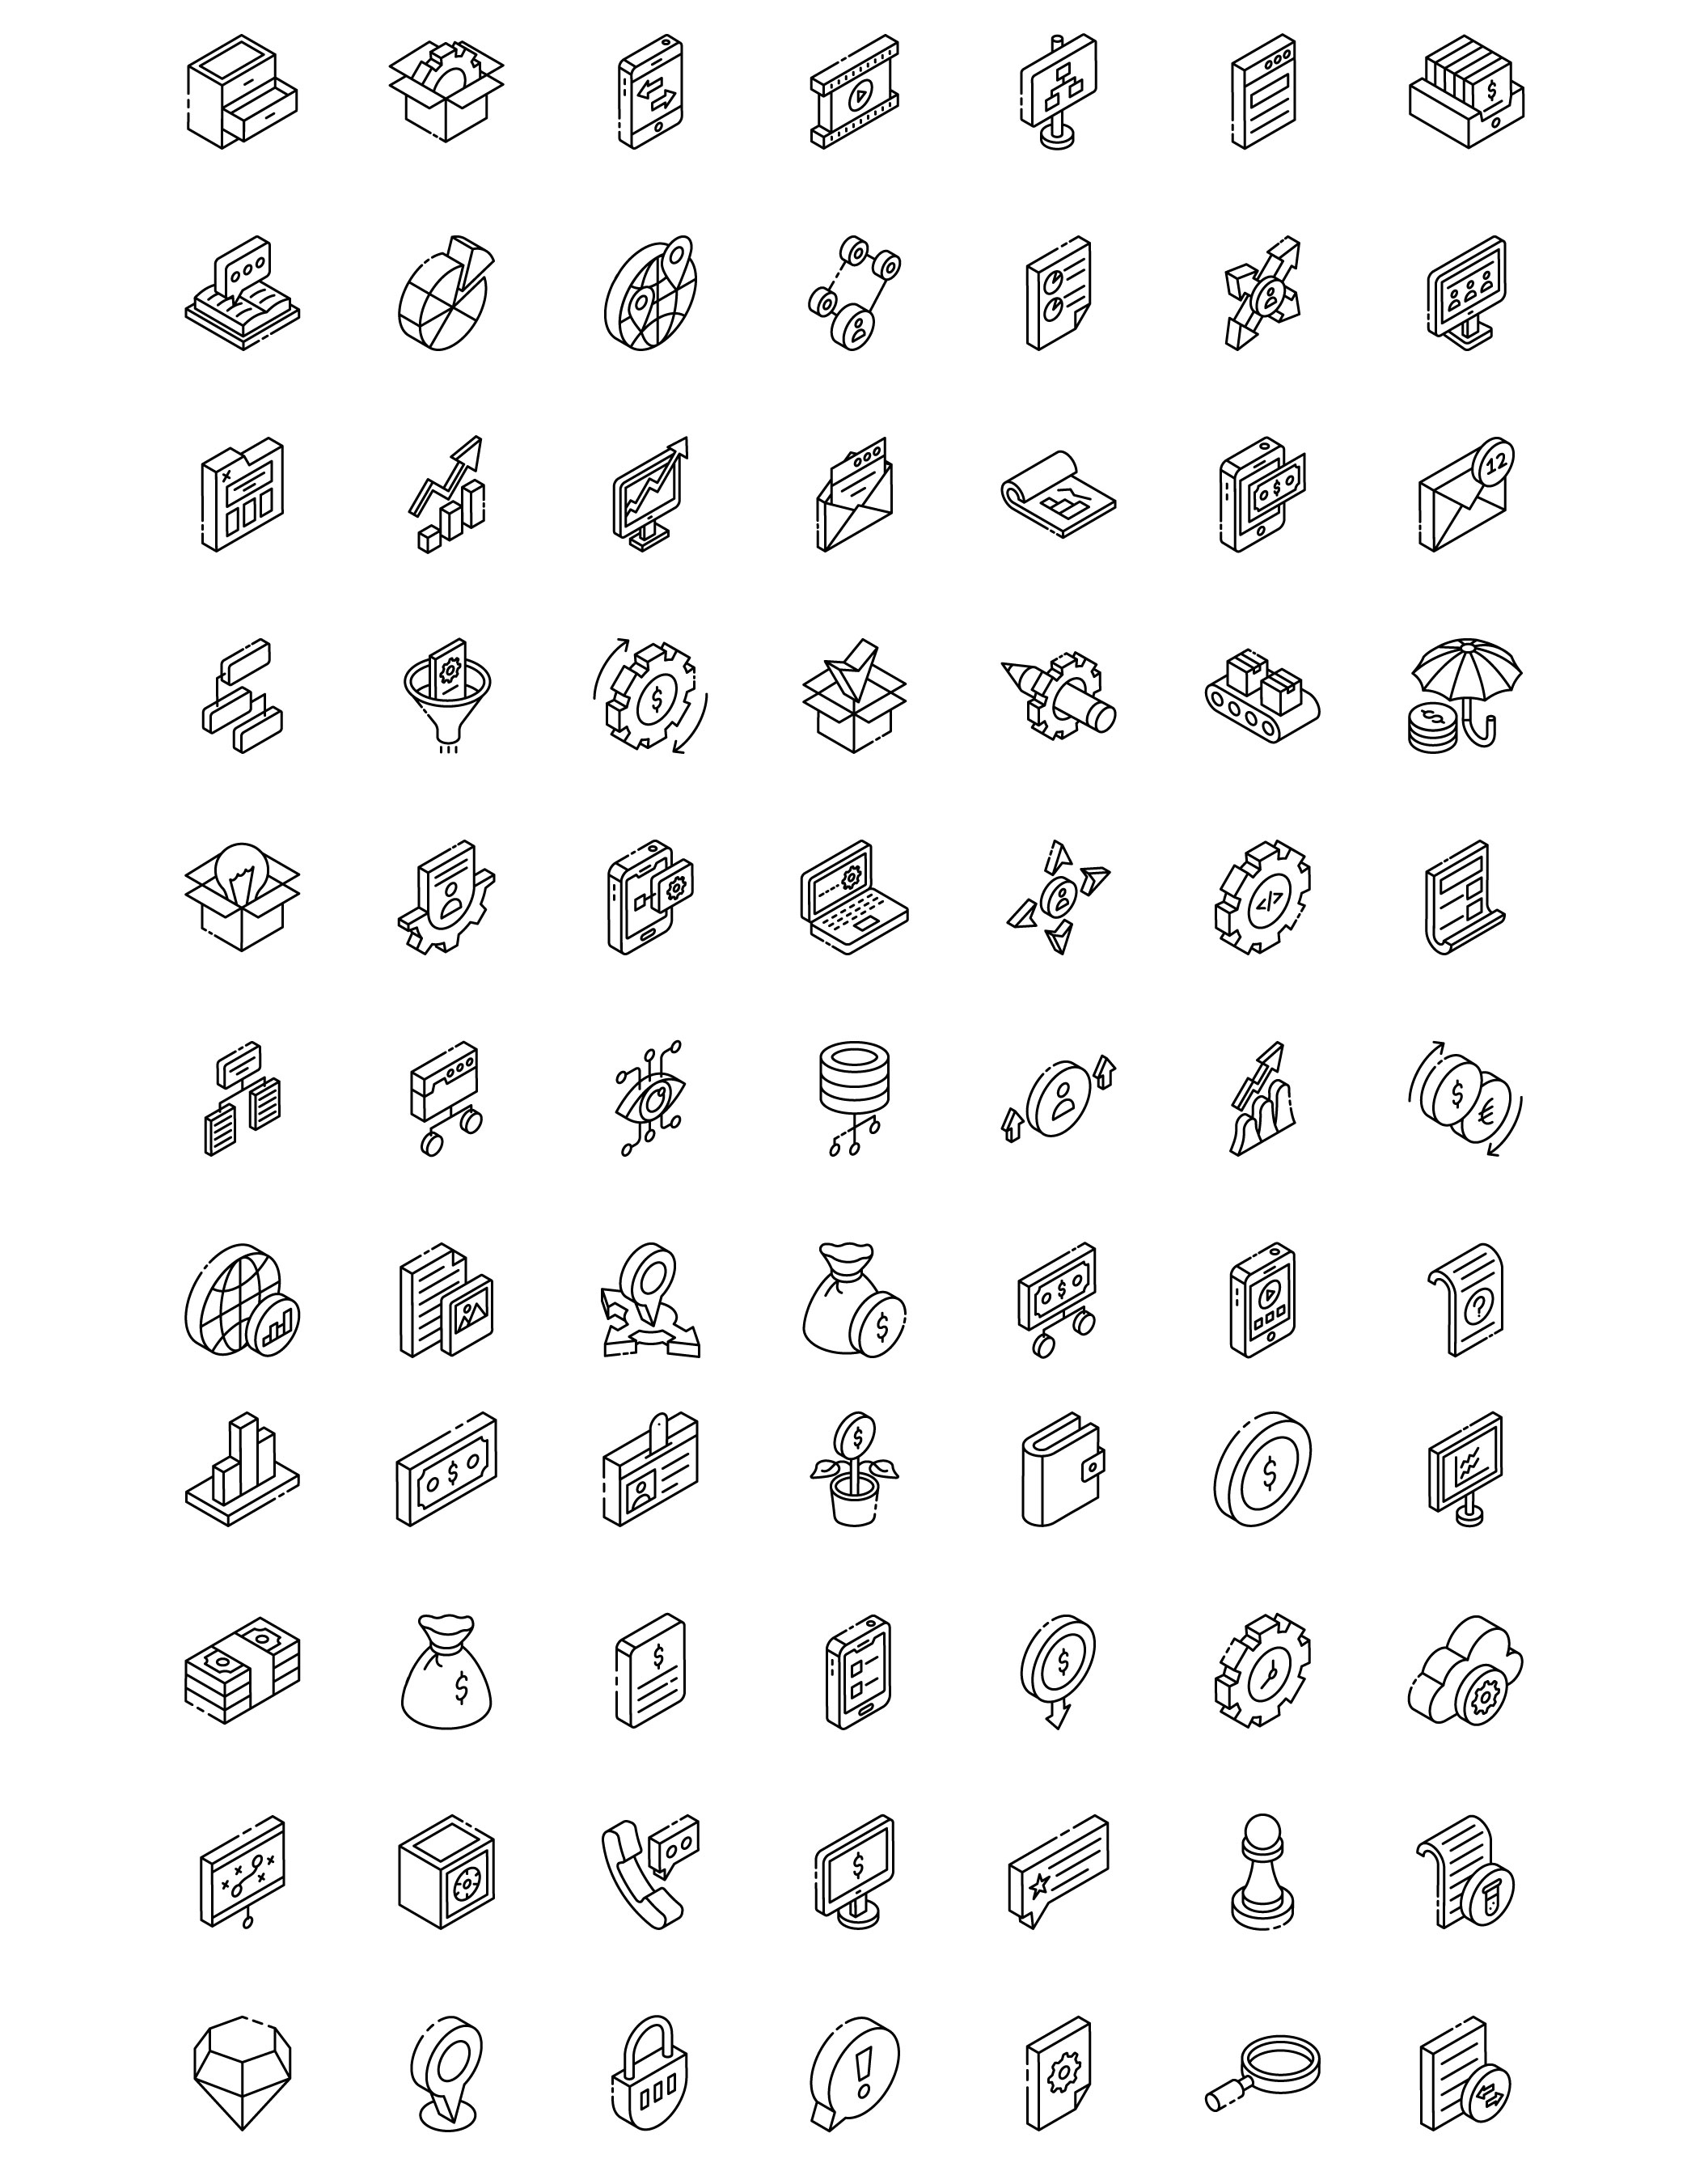 1144 2000款常用网站app小程序应用程序iso等距视图icon图标设计素材 2000+ Isometric Icons Set